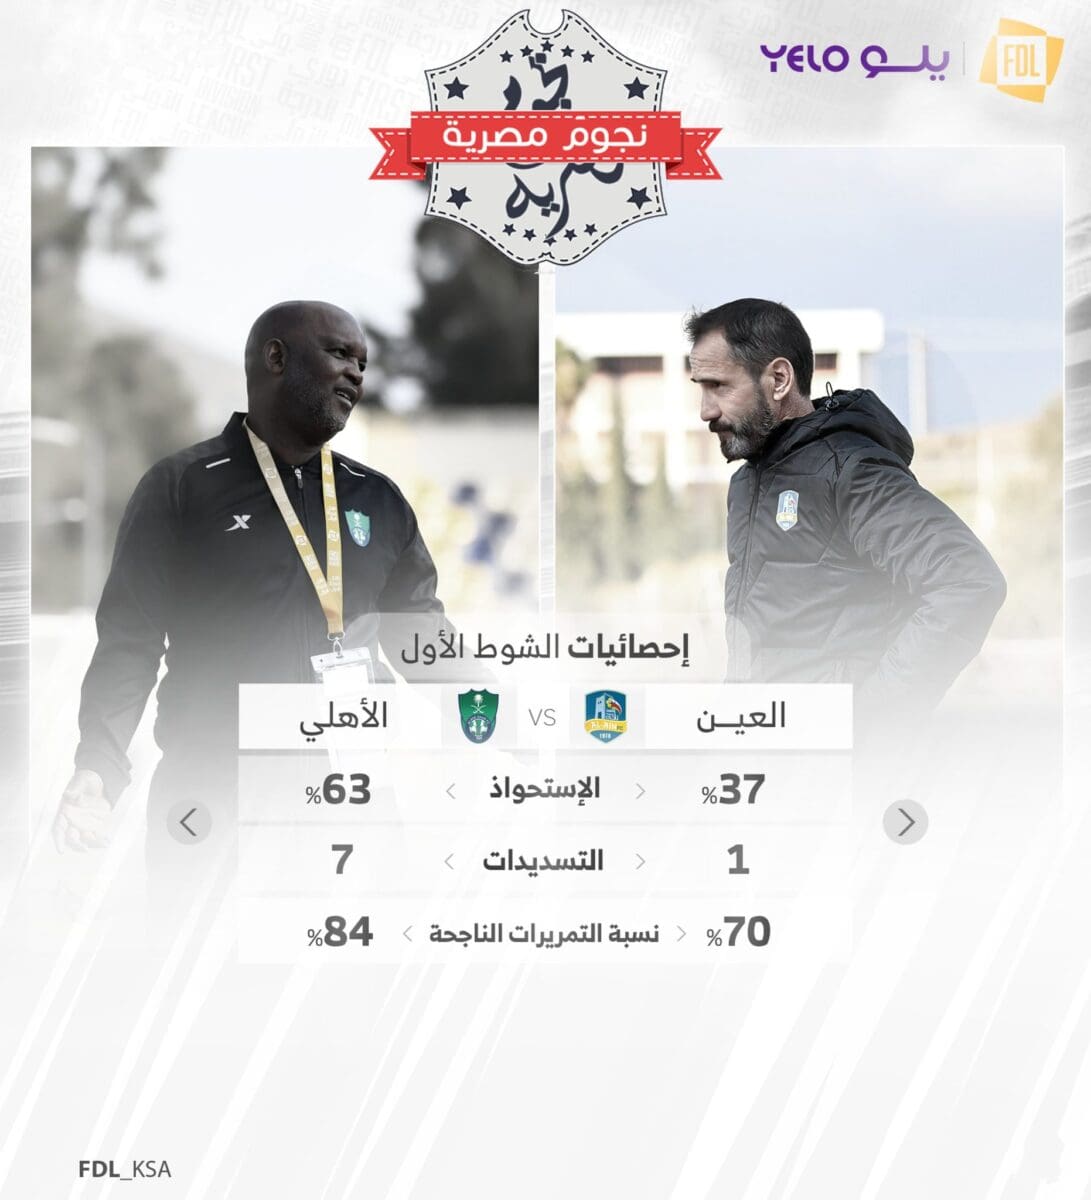 أبرز إحصائيات الشوط الأول في مواجهة العين والأهلي المؤجلة من دوري الدرجة الأولى السعودي